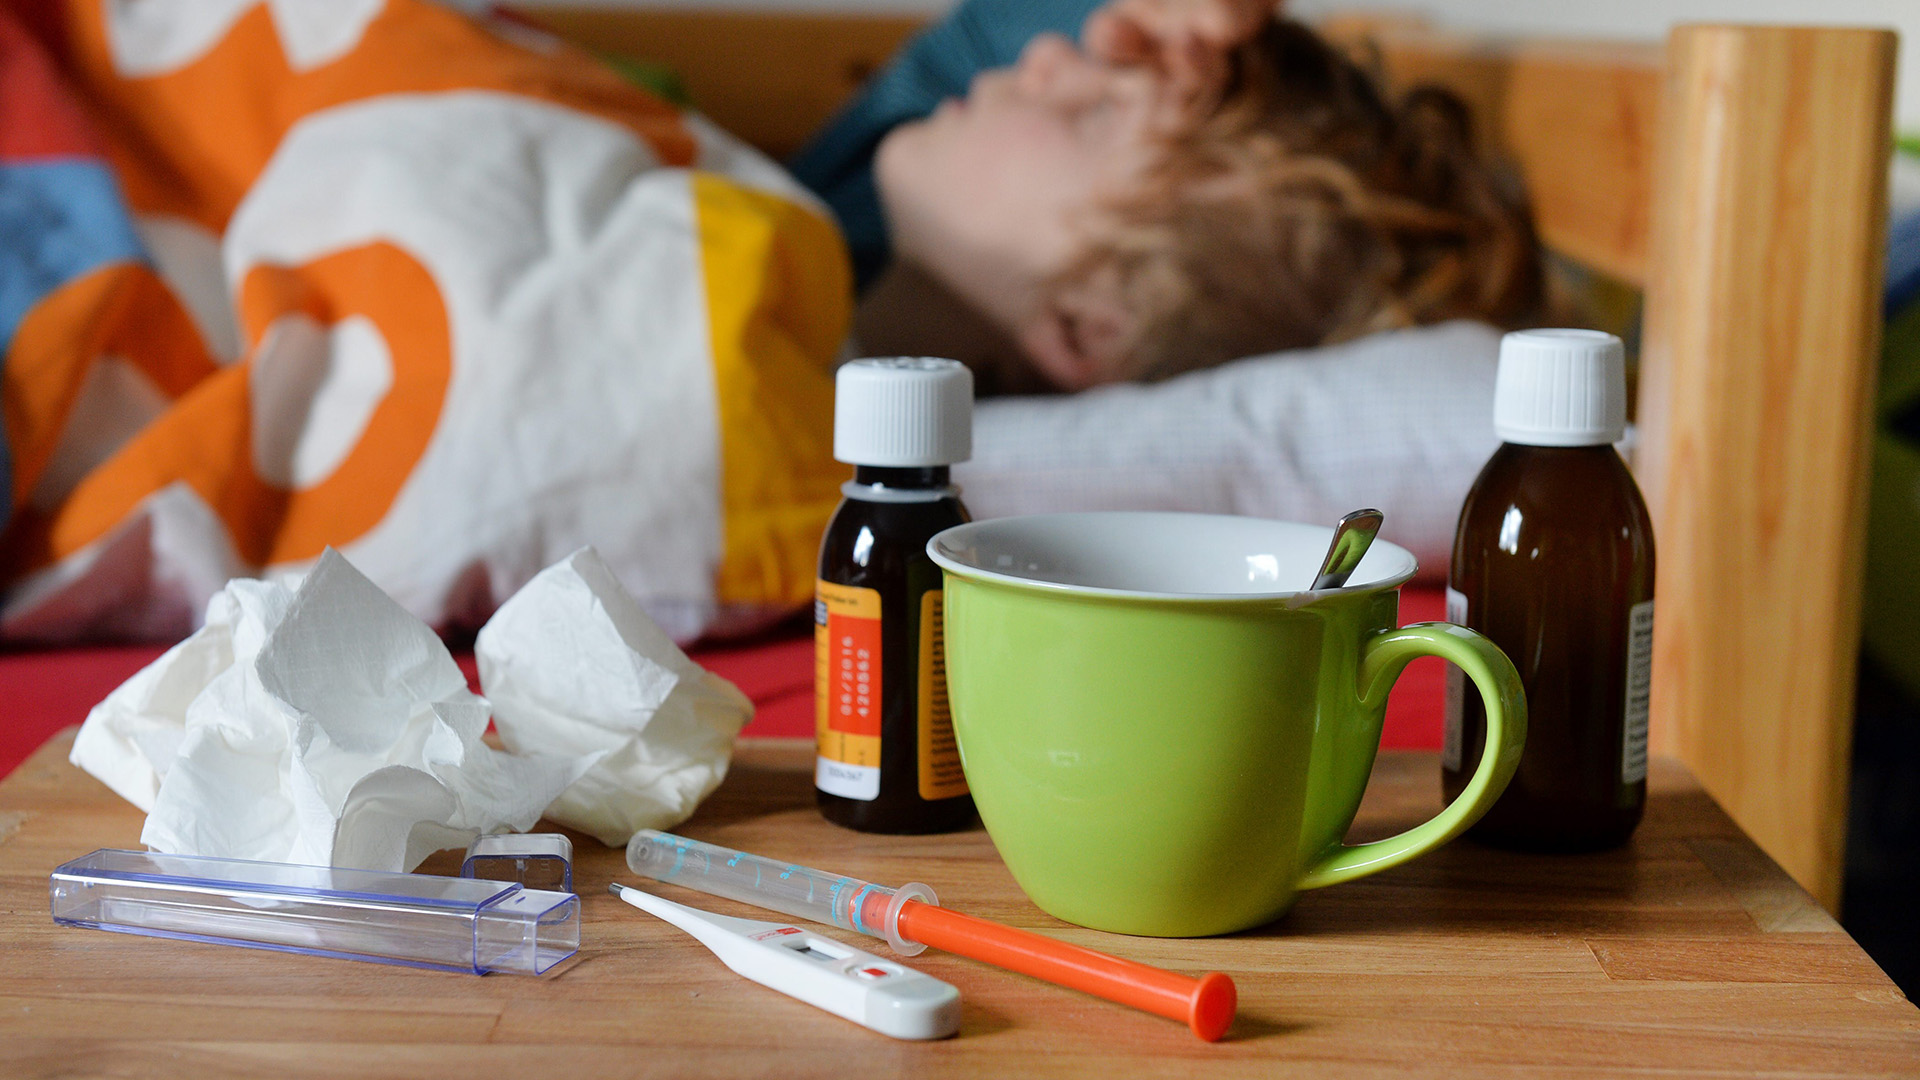 Fiebersaft, Fieberthermometer, Taschentücher und eine Tasse am Bett eines Kindes | picture alliance / Frank May